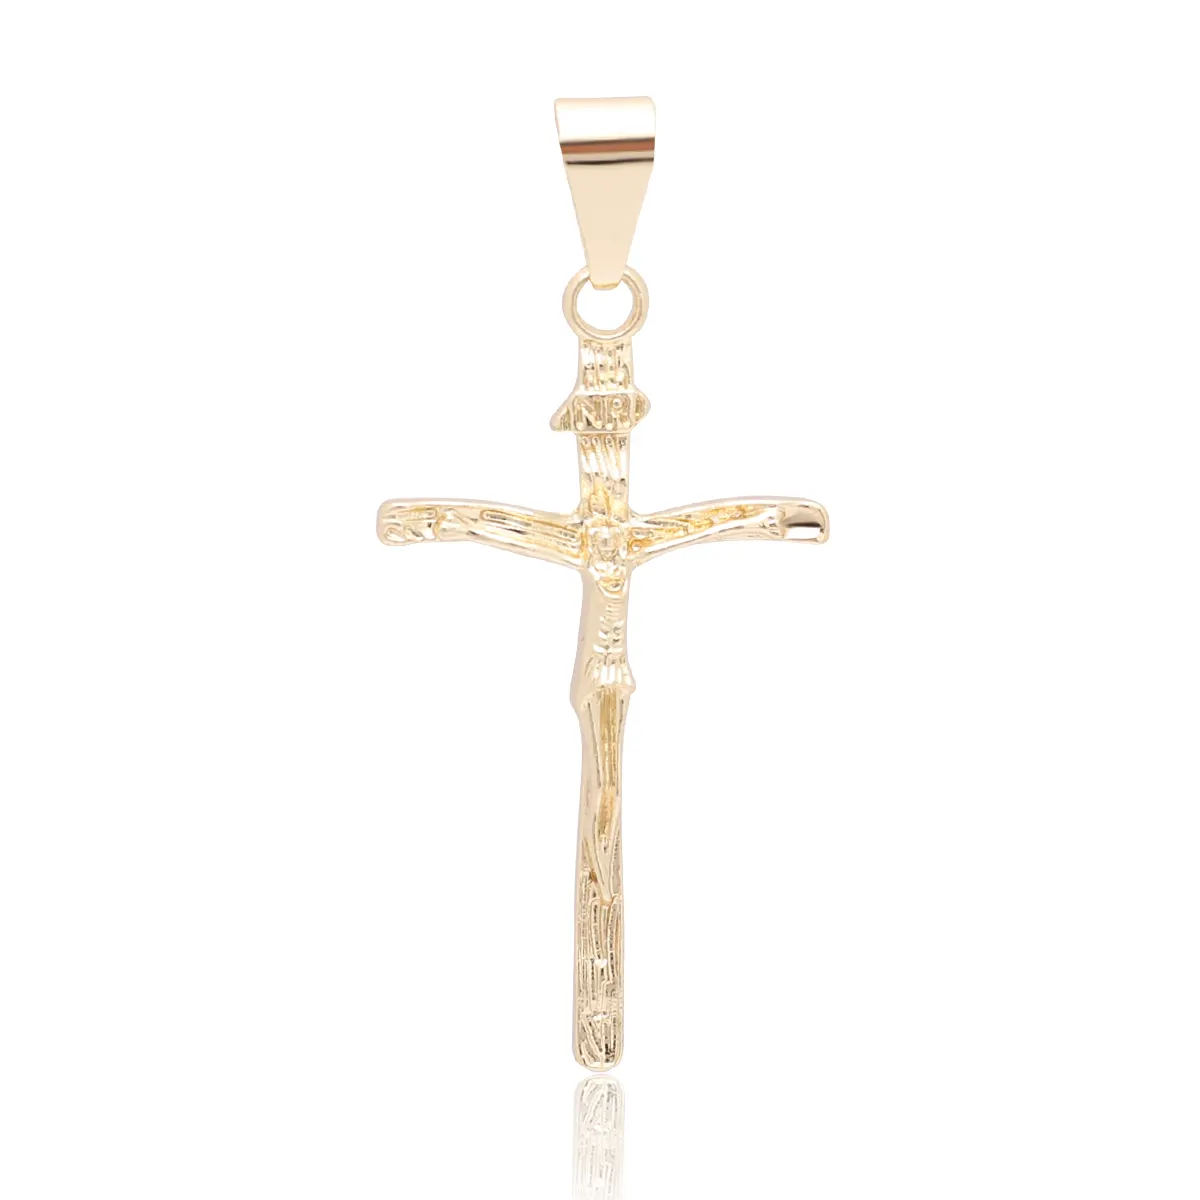 Подвеска с крестом Иисуса, Виктория, ожерелье с распятием, религиозные украшения, кулон с крестом Иисуса